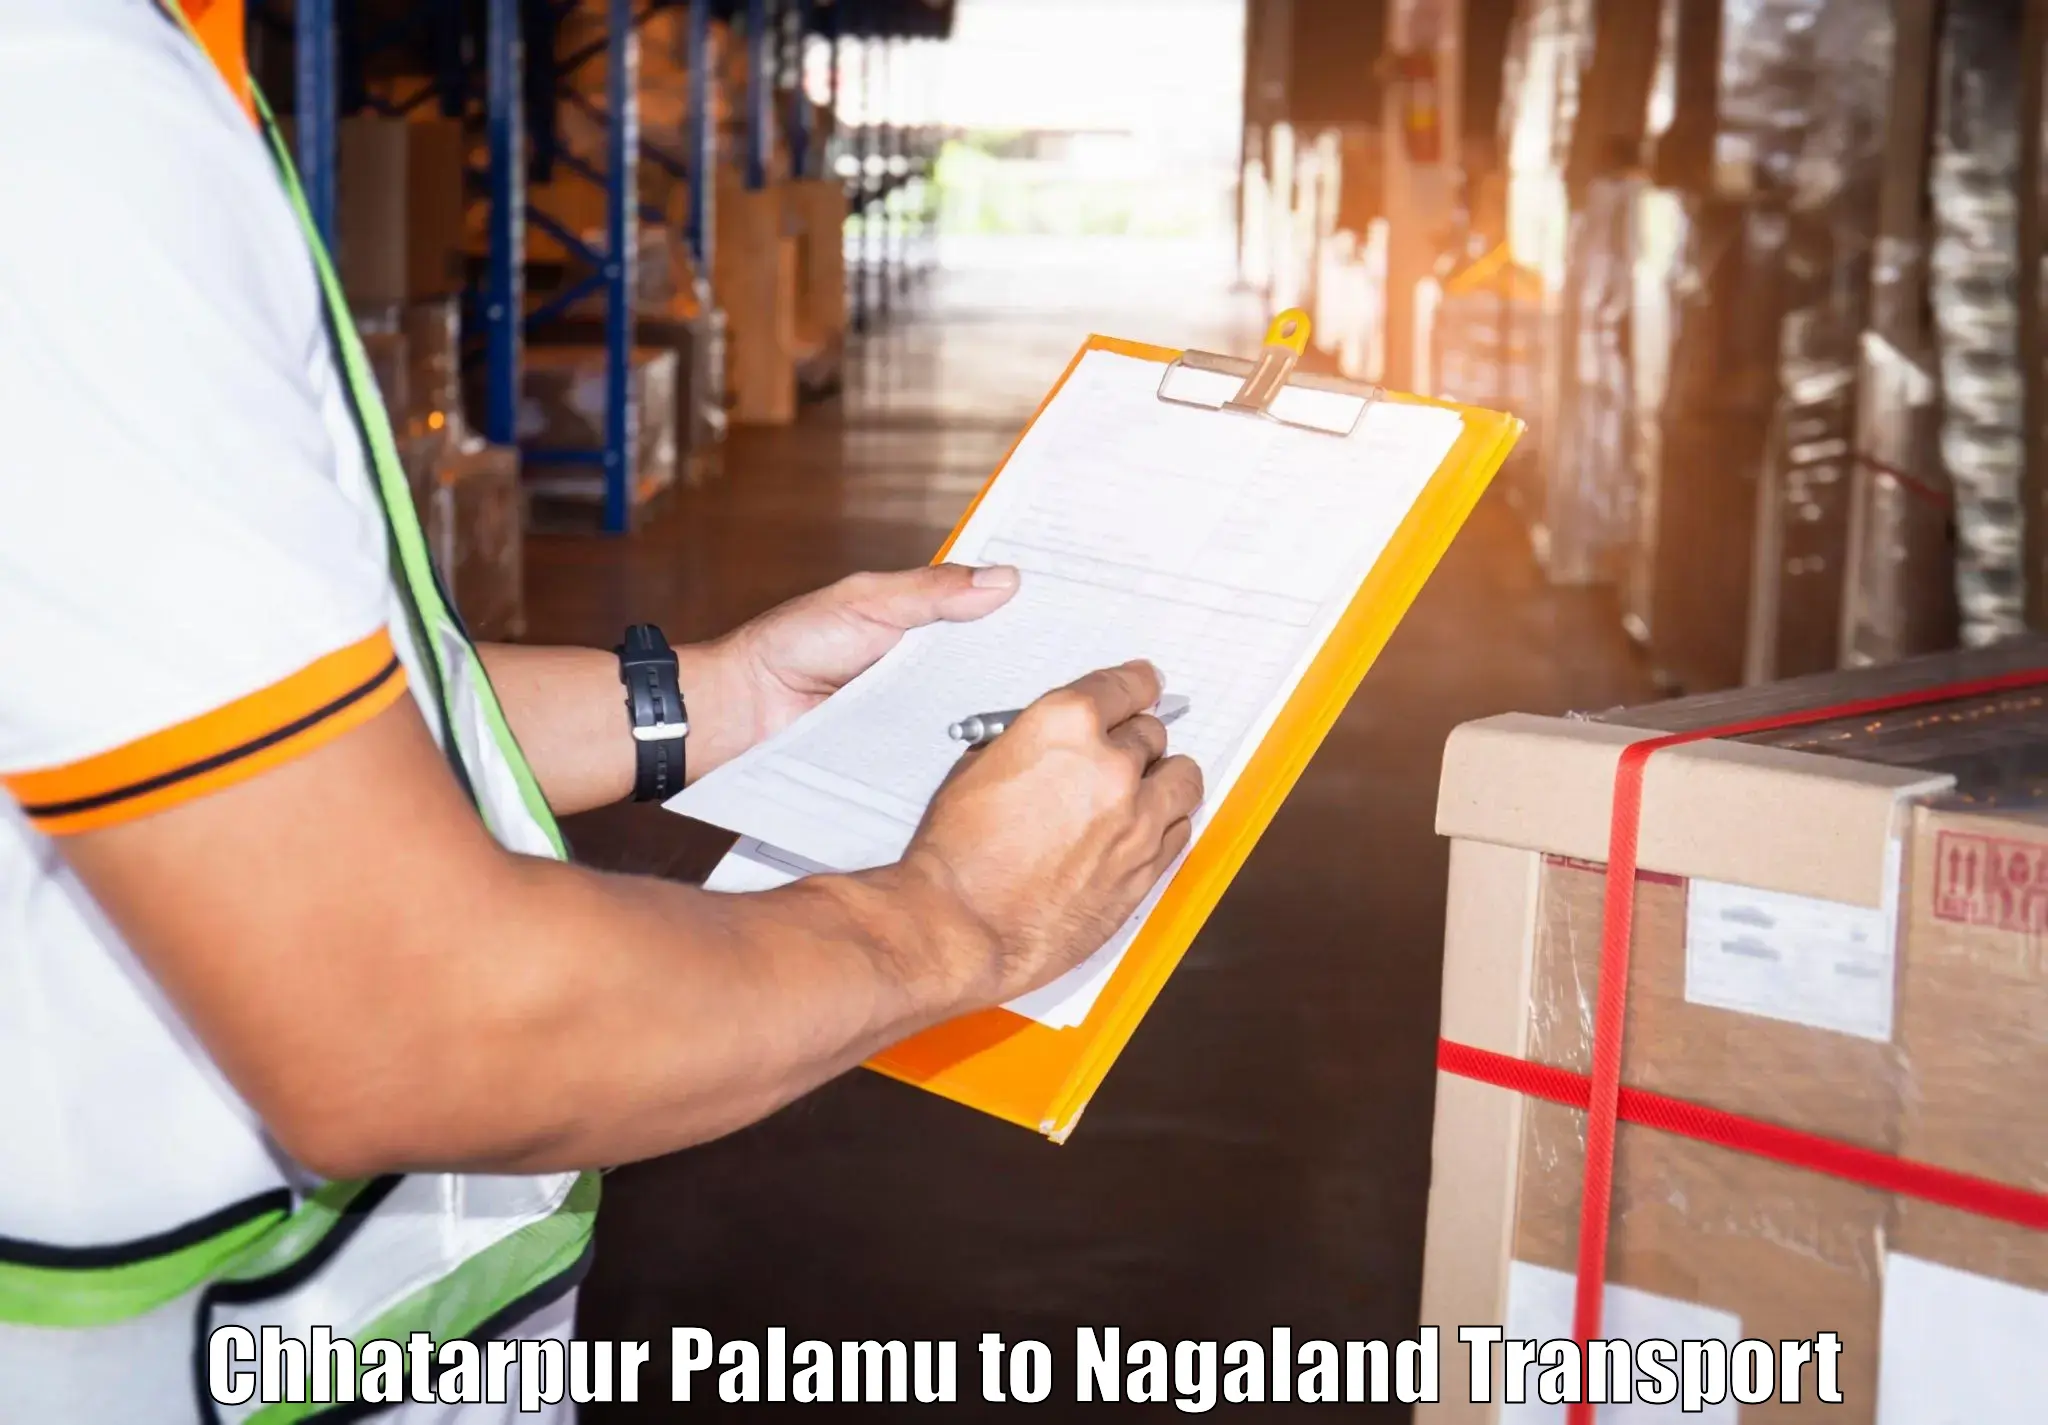 Daily parcel service transport Chhatarpur Palamu to Phek